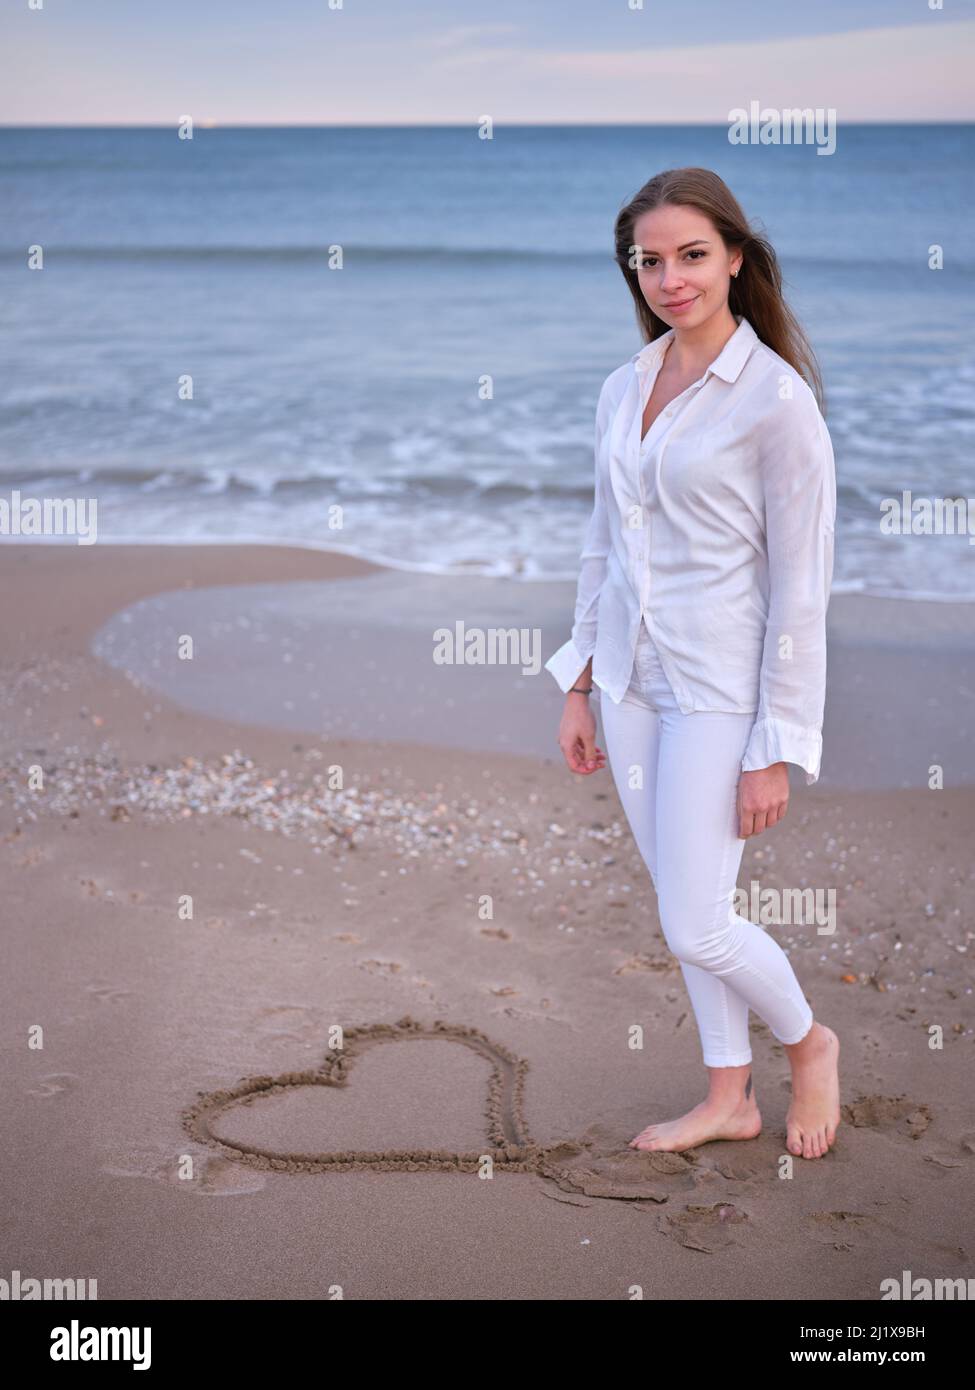 Eine junge Frau in Weiß, die am Strand steht, mit einem im Sand gezeichneten Herzen und der Kamera zuschaut. Stockfoto